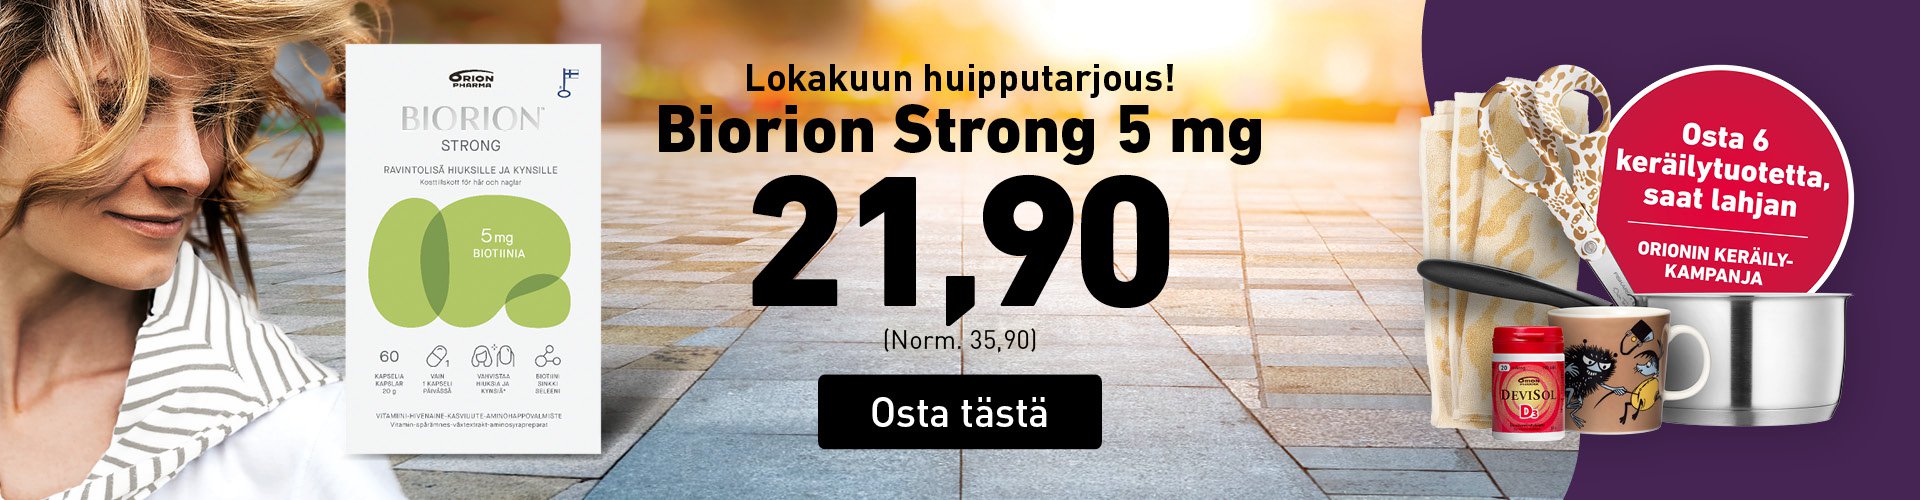 Huipputarjous Biorion Strong 21,90!